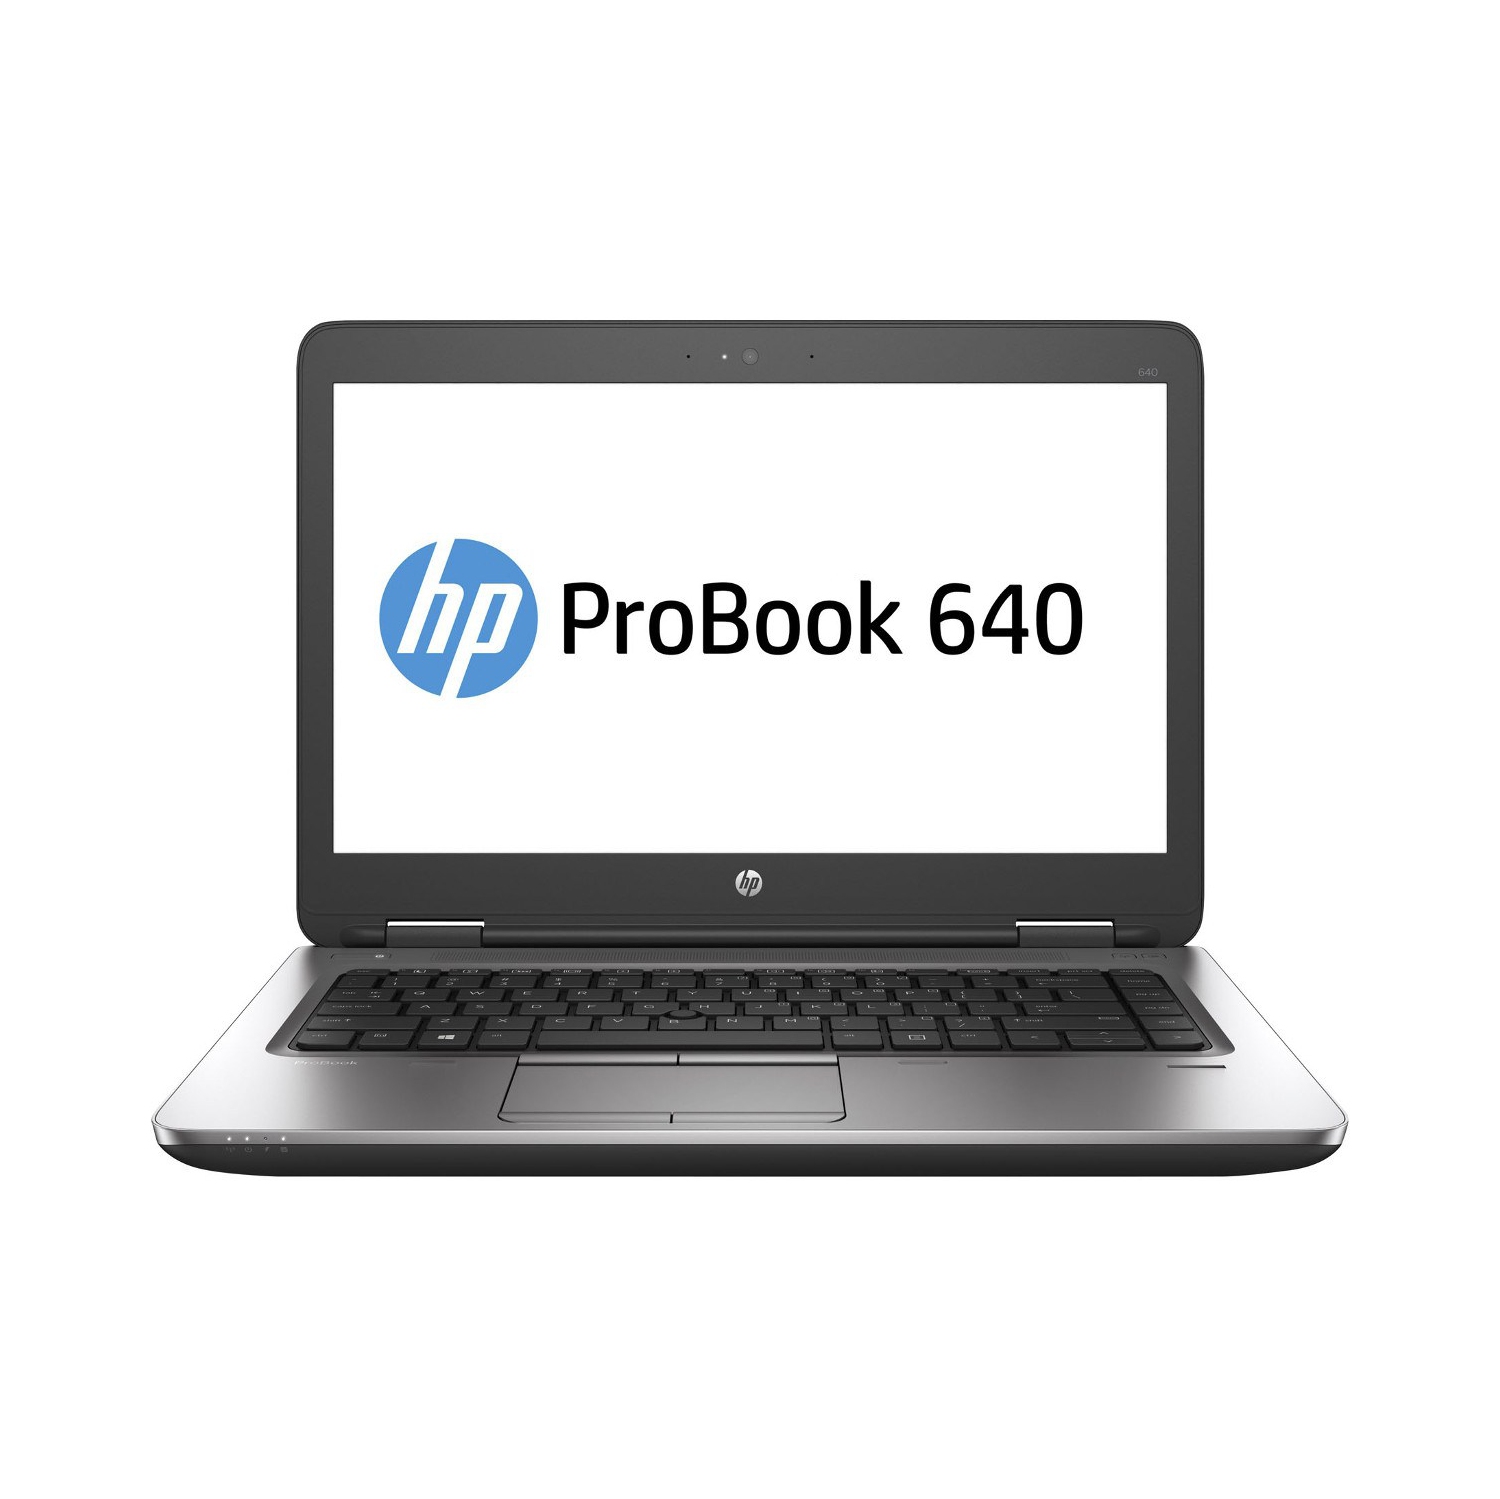 Refurbished (Excellent) - HP ProBook 640 G2 14" Laptop, Intel Core i7 6600U up to 3.4GHz, 12G DDR4, 1T SSD, USB Type-C, Win10P64 (EN/FR/ES)